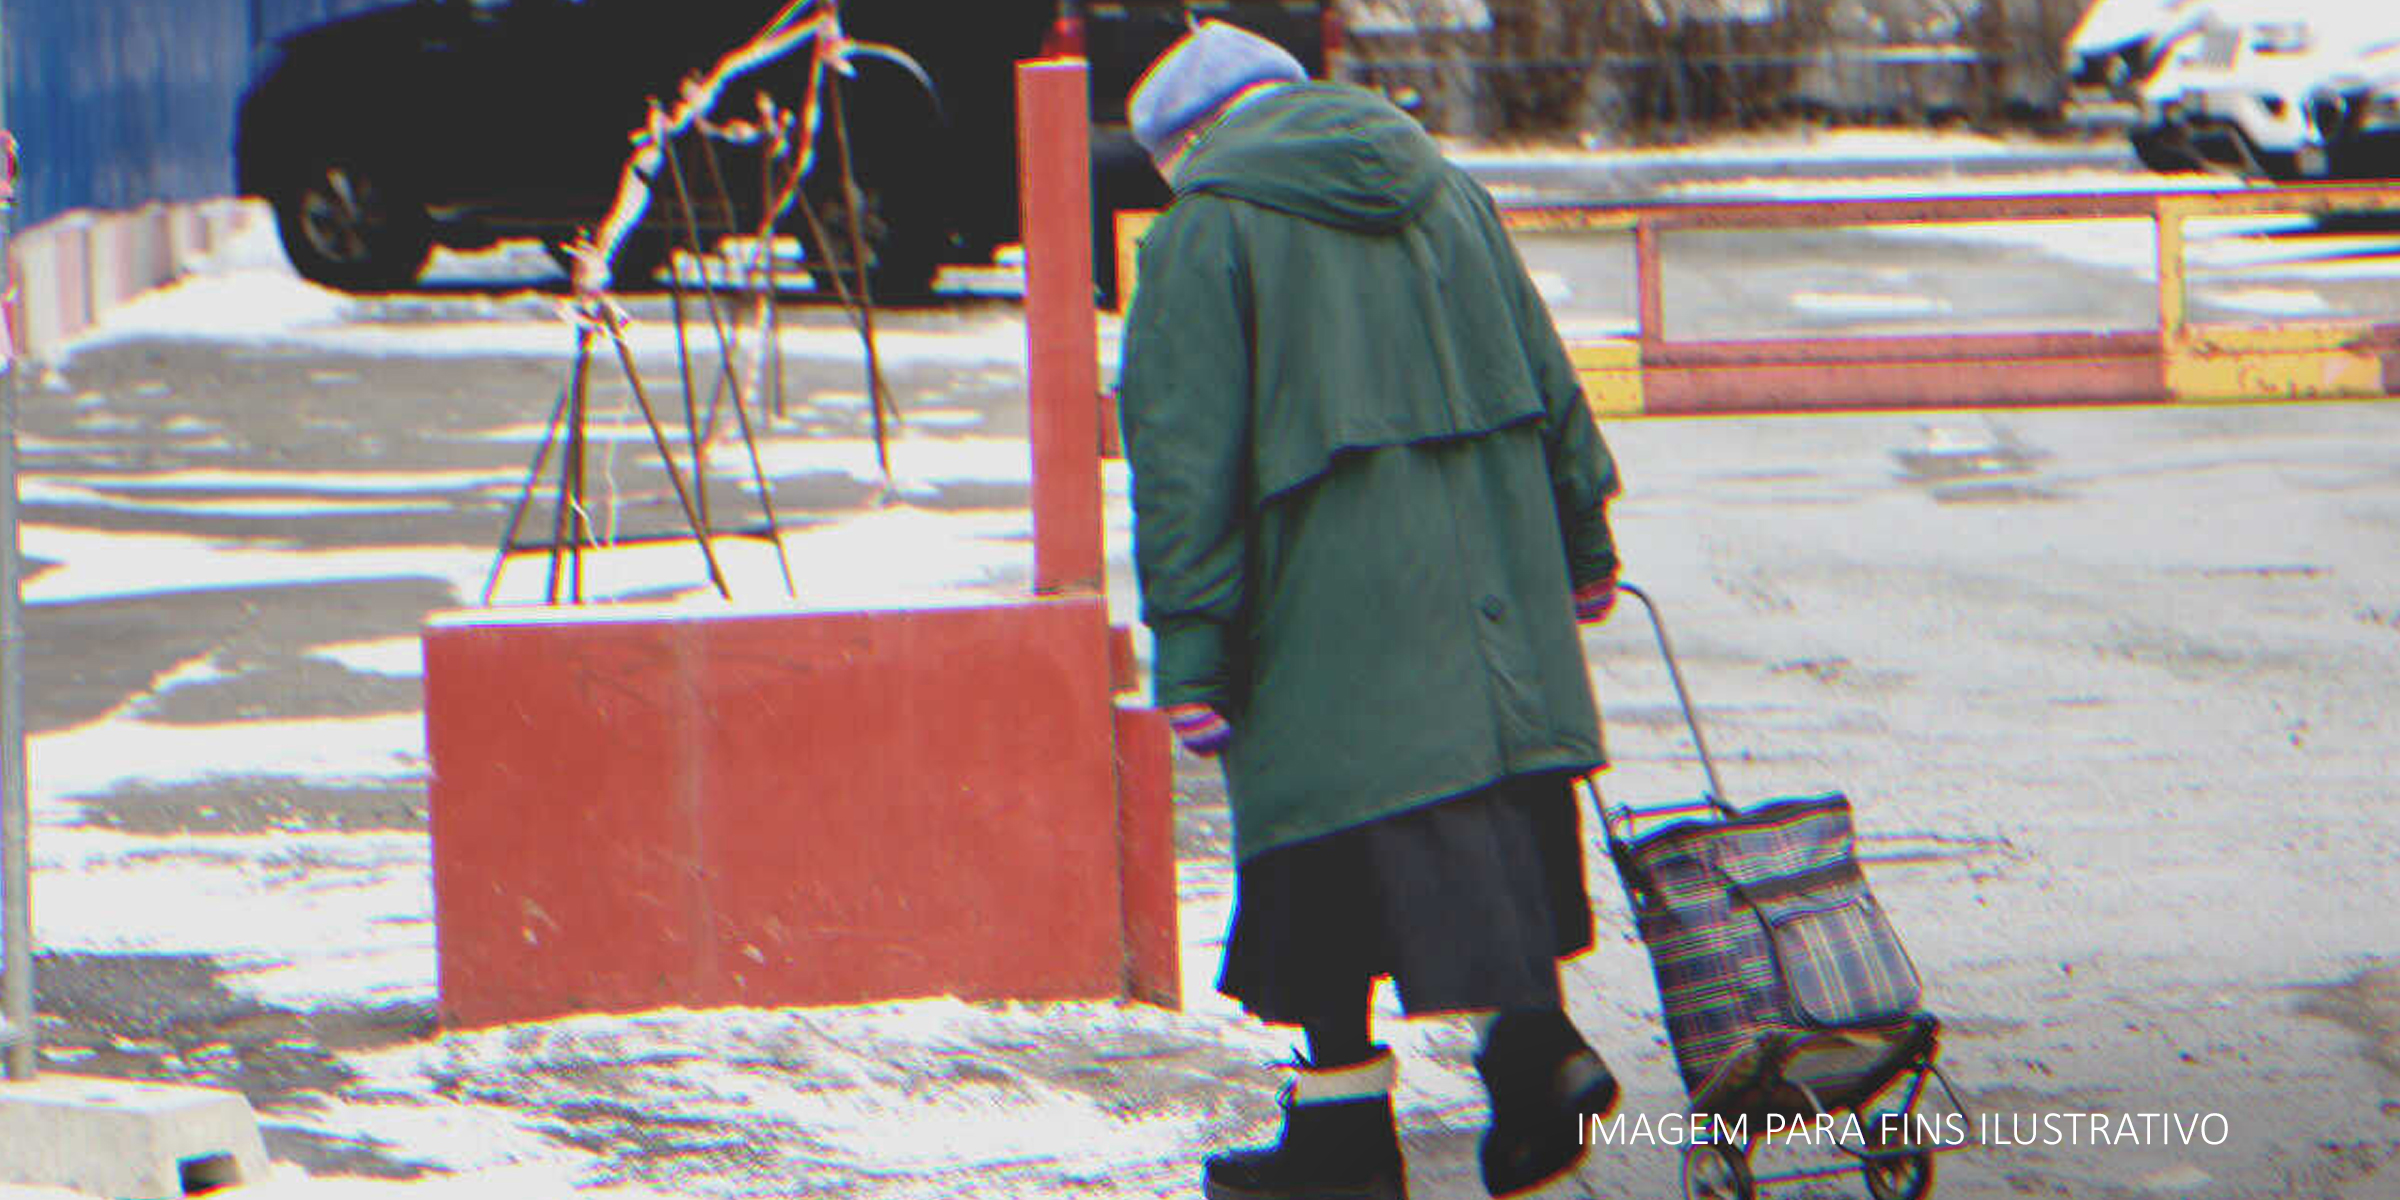 Senhora idosa solitária caminhando em uma rua com neve | Foto: Shutterstock